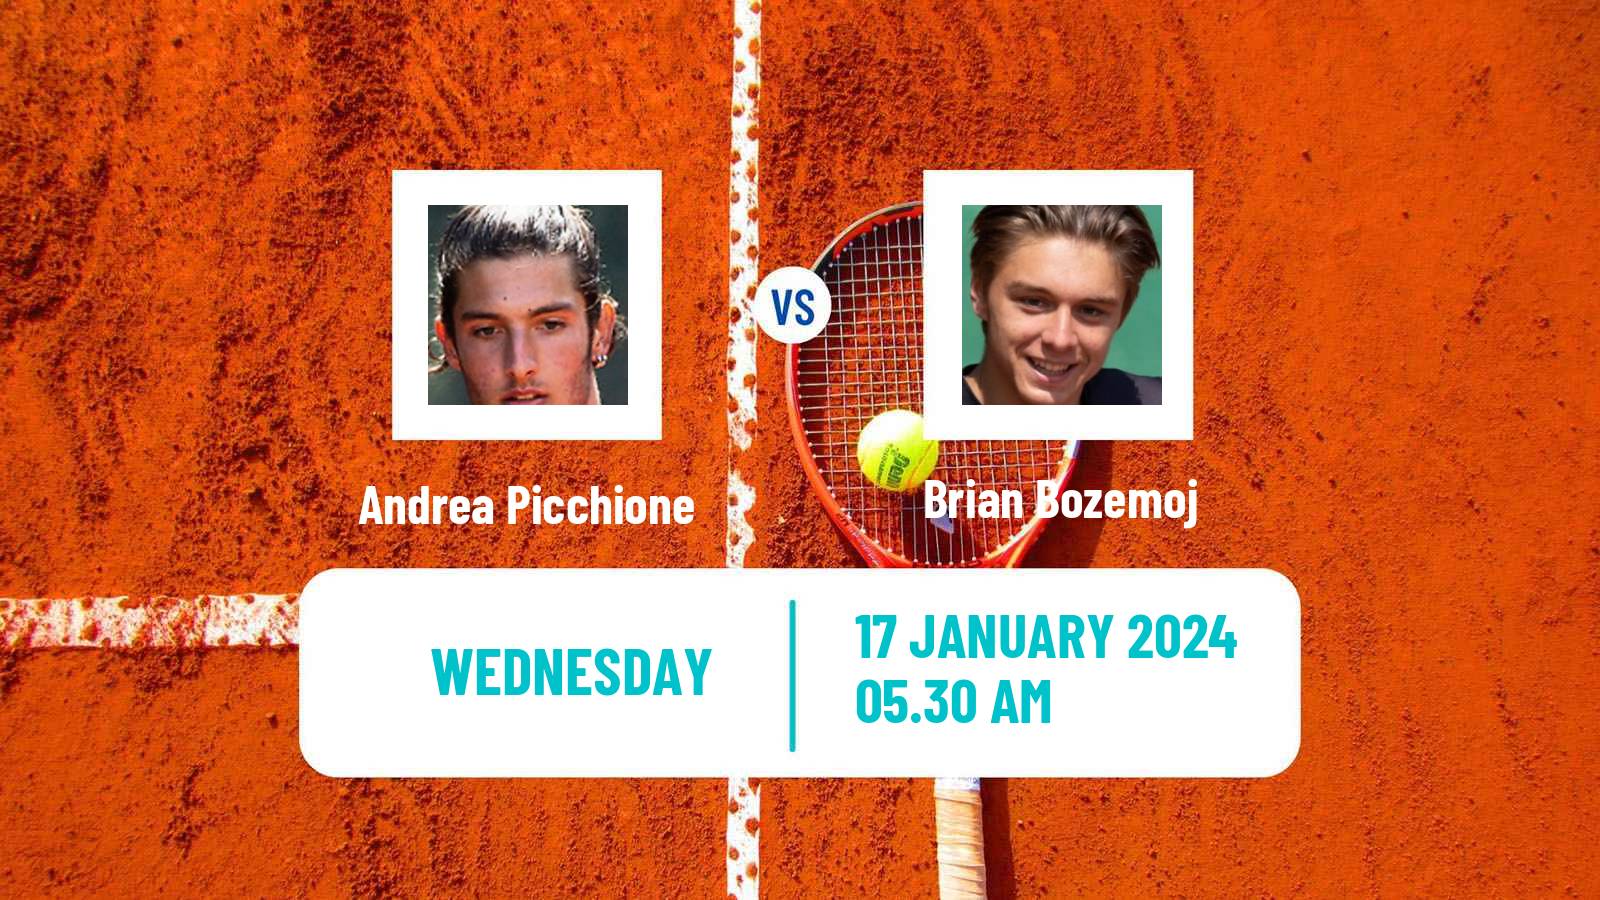 Tennis ITF M15 Bressuire Men Andrea Picchione - Brian Bozemoj